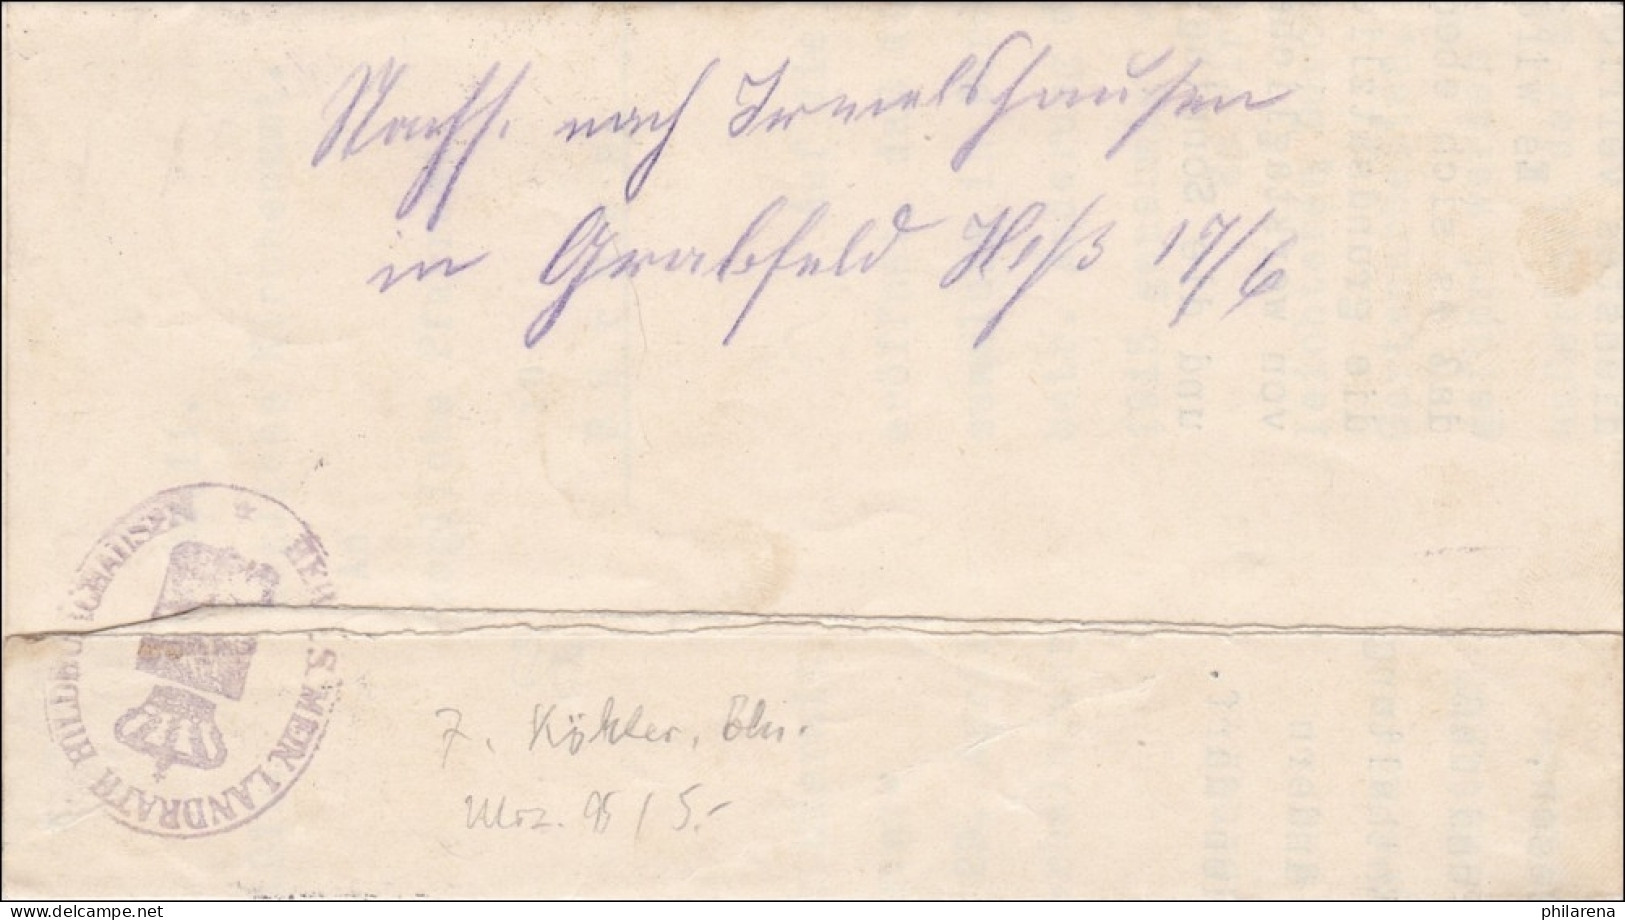 Hildburghausen 1915 Vom Herzoglichen Landrat Nach Bürden - Storia Postale